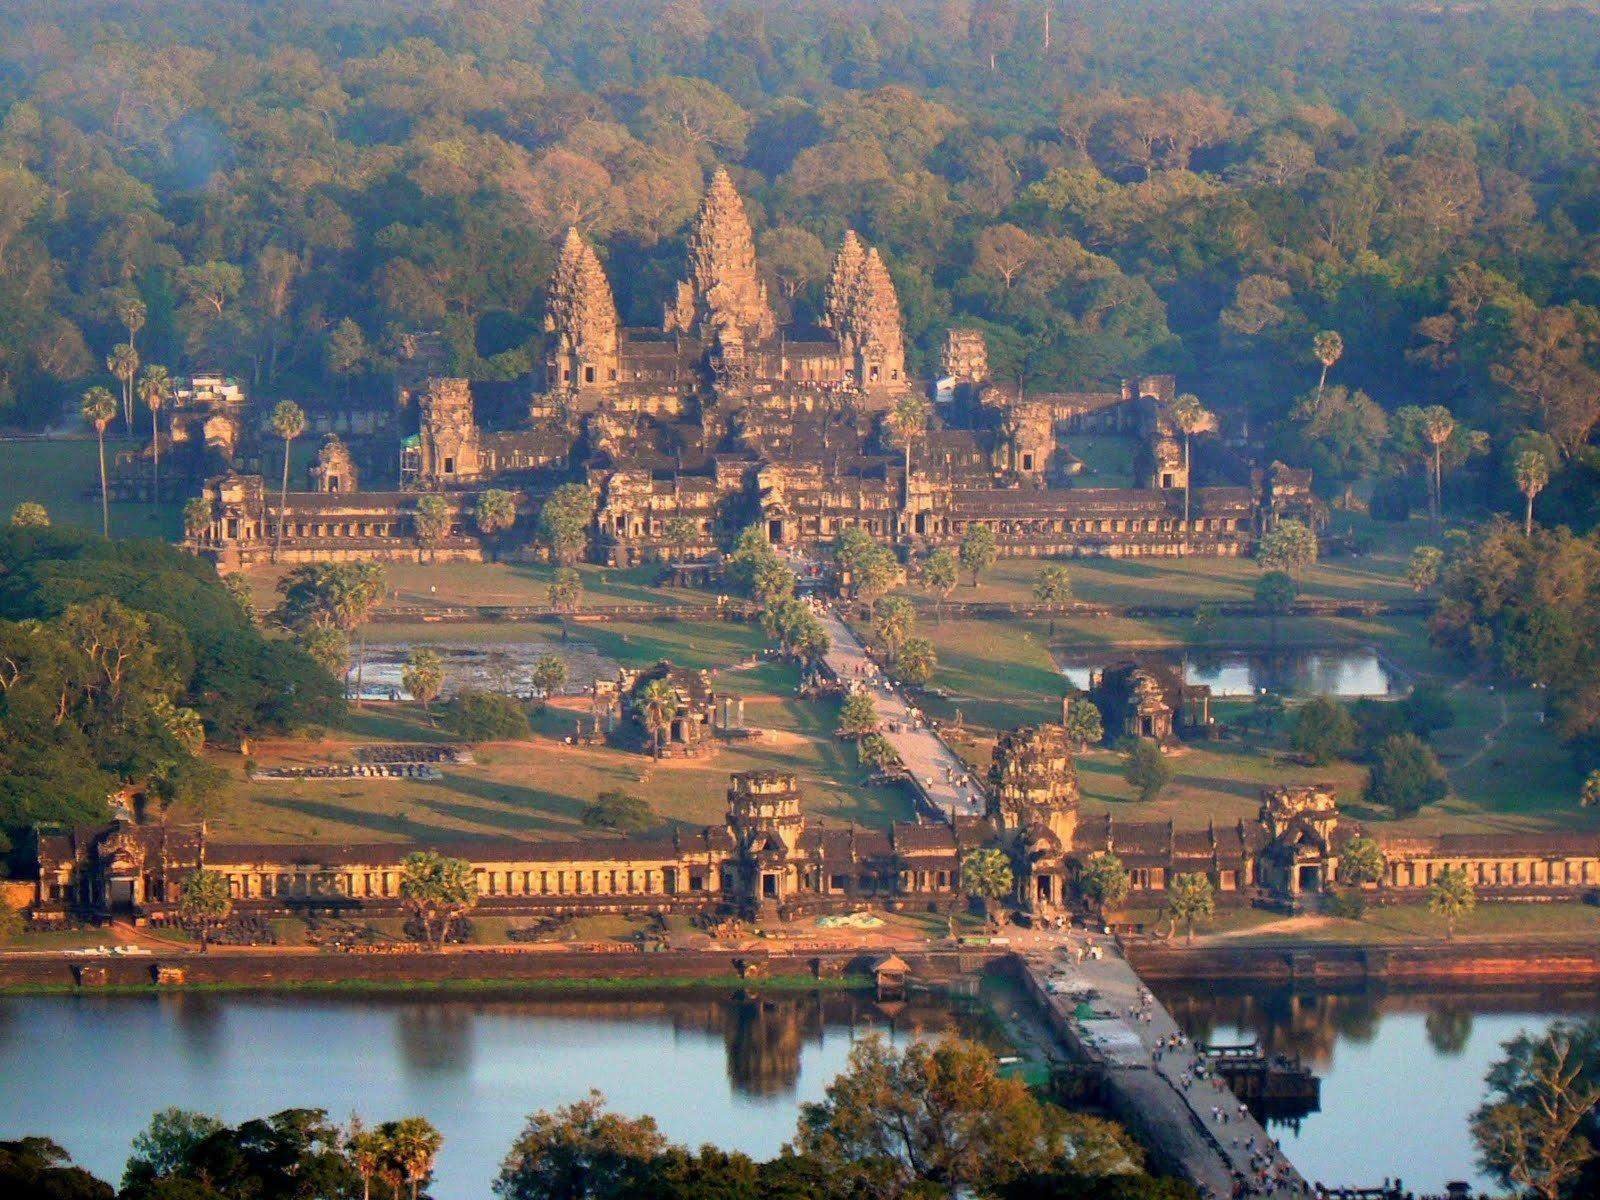 Храм в камбодже ангкор ват фото